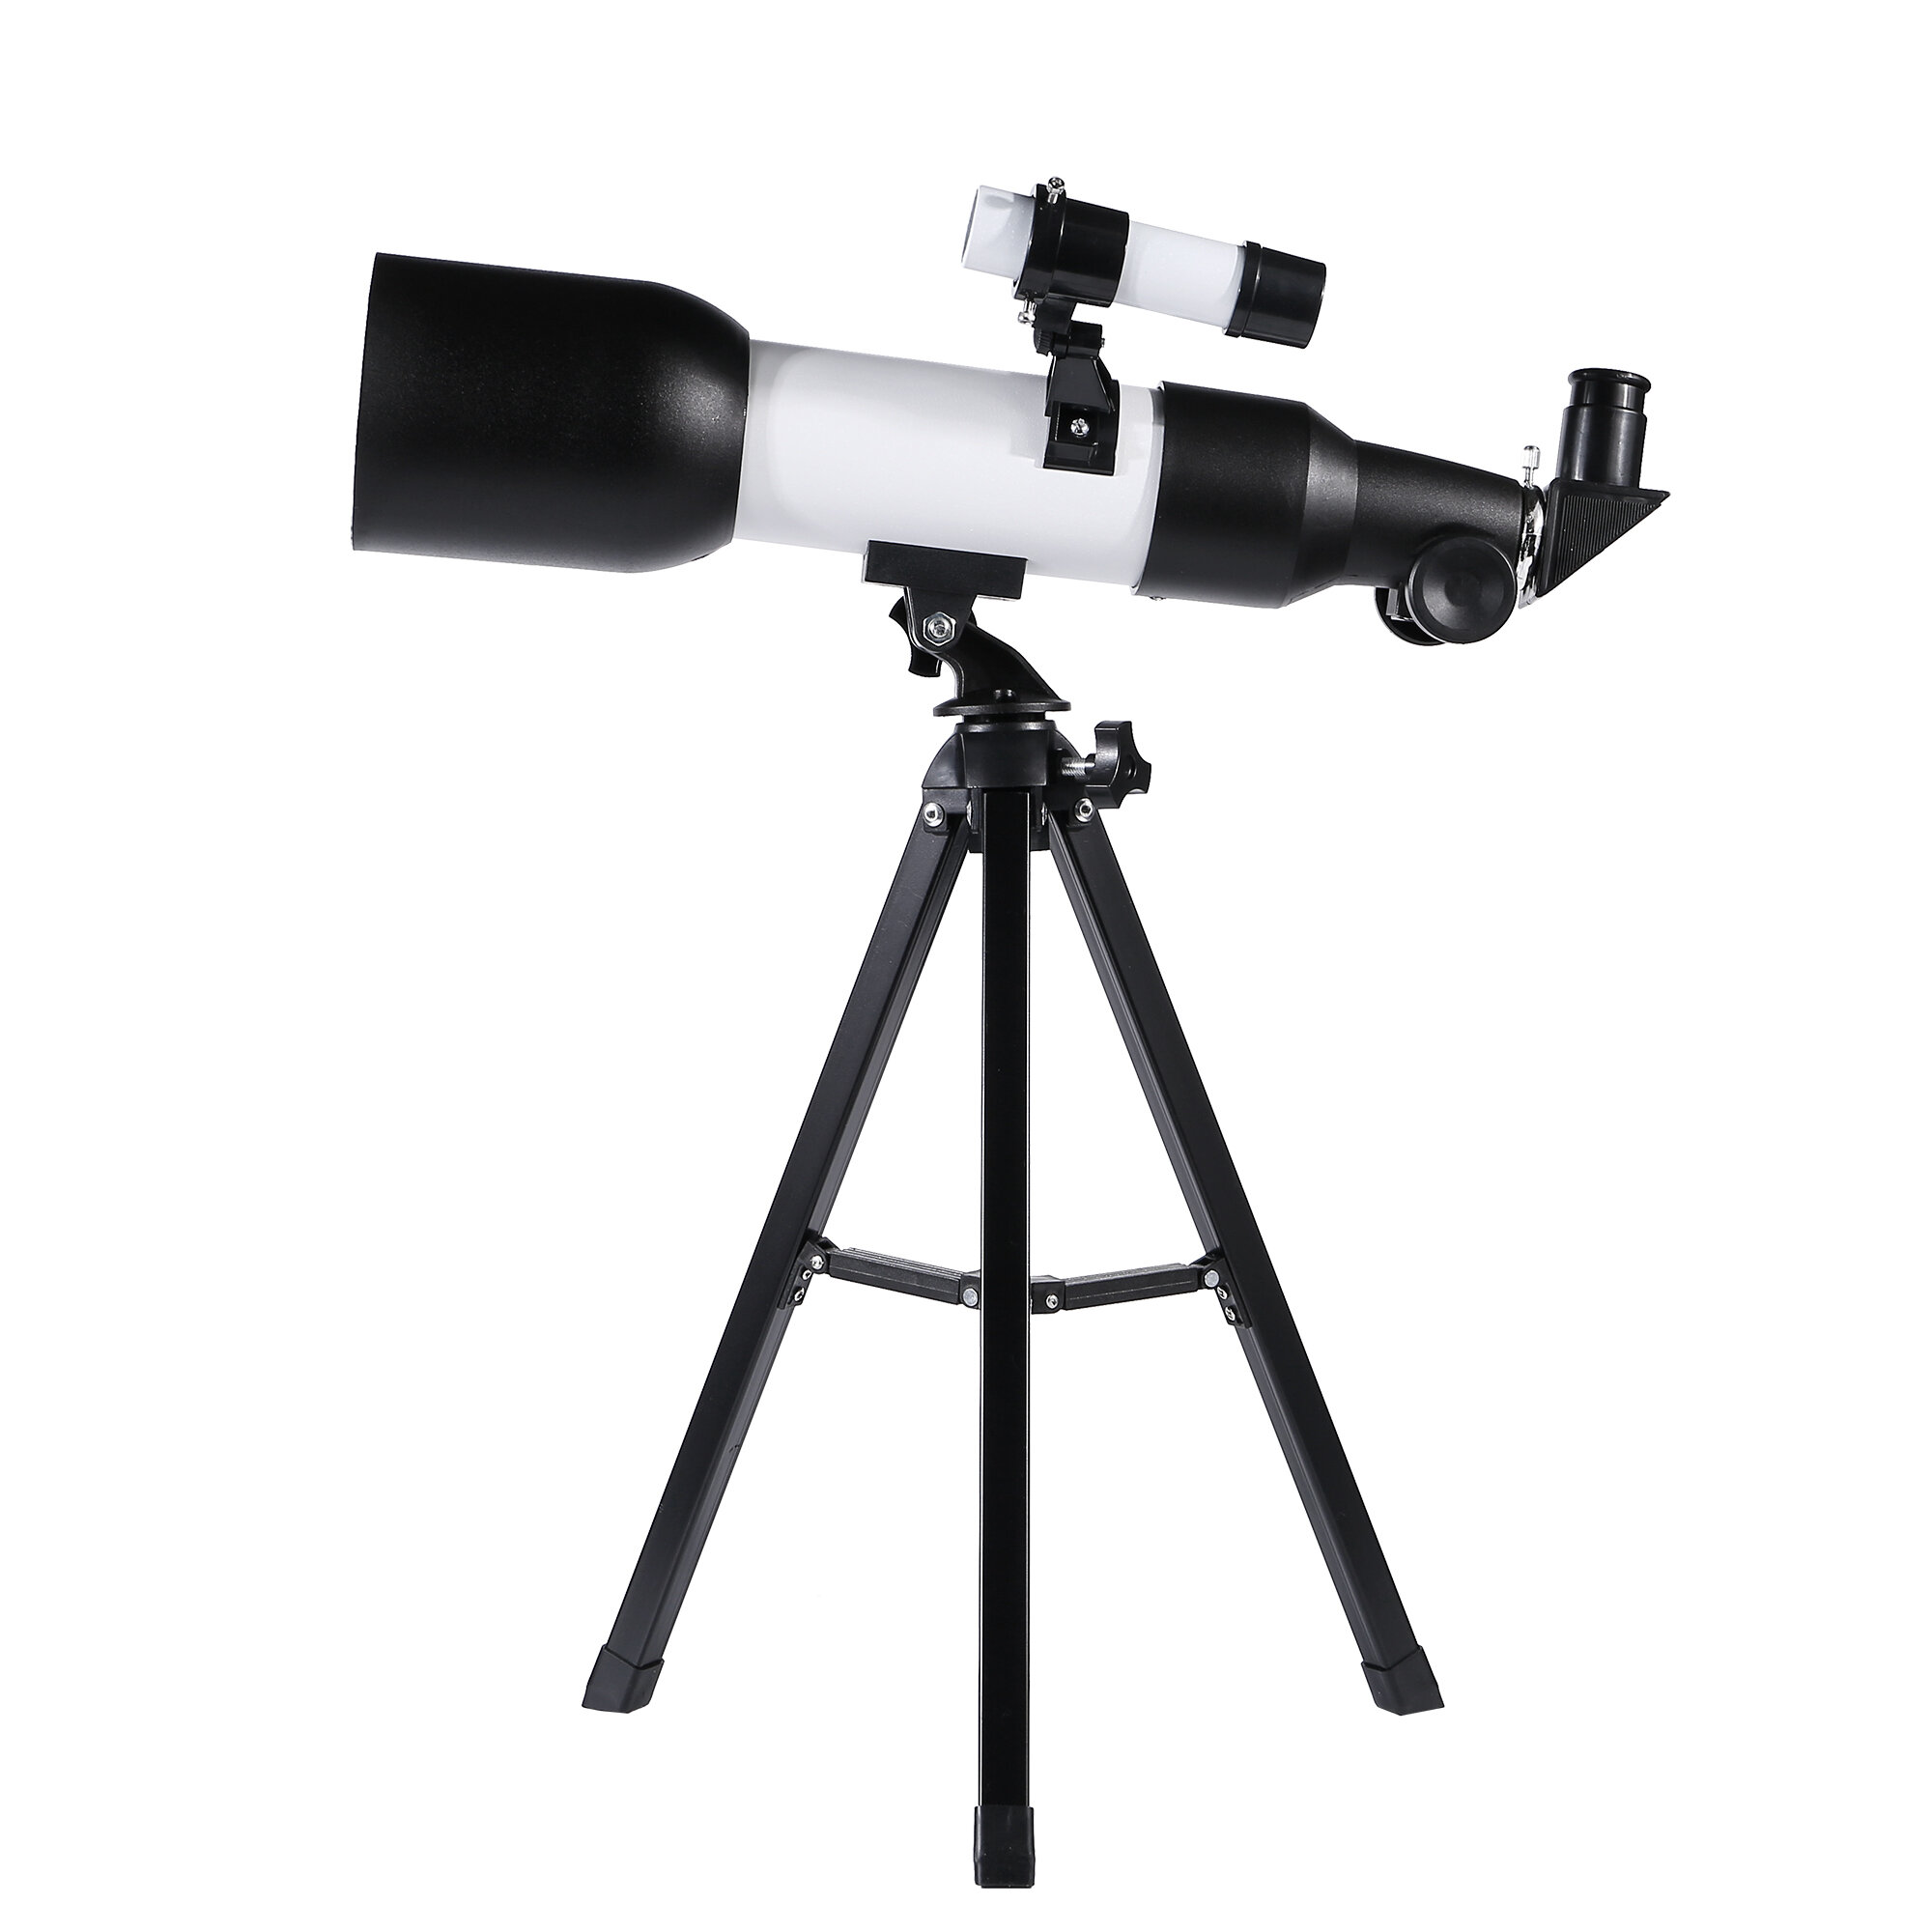 Çocuklar için düşük ışık gece görüşü ile Eyebre 120x Profesyonel HD Astronomik Teleskop, üç ayaklı derin uzay gözlemi için idealdir.